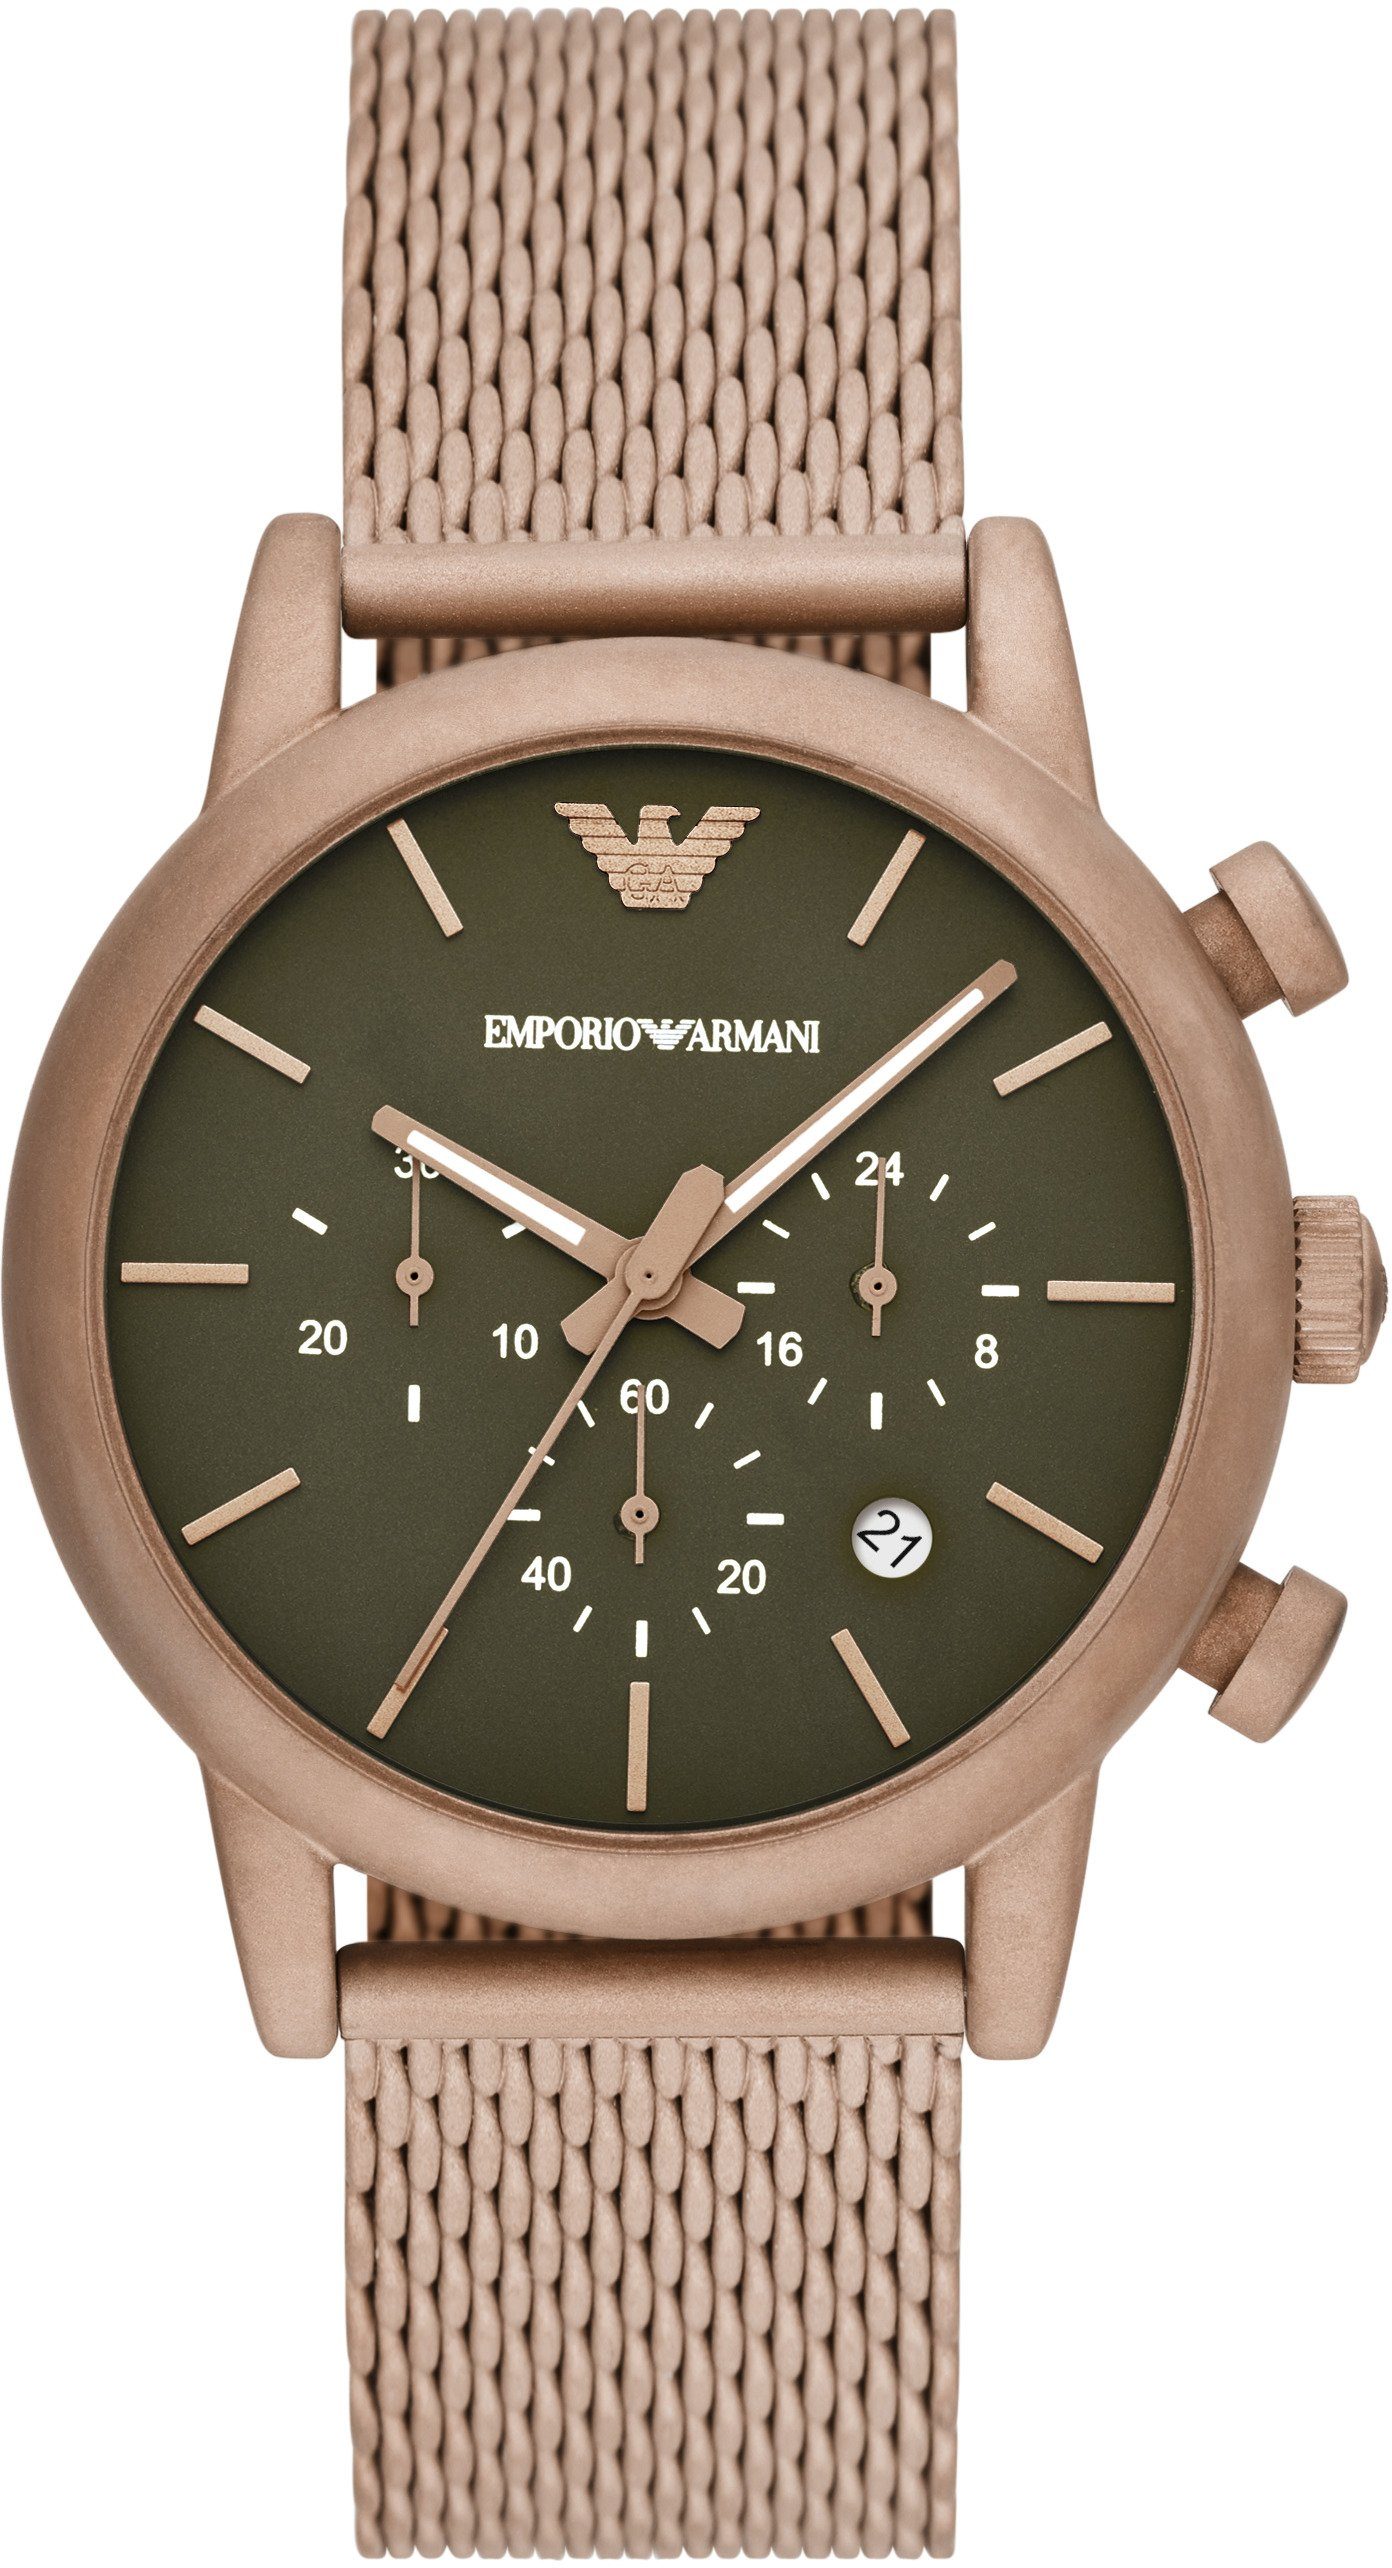 Emporio Armani Herren Uhren online kaufen » Armani Uhr | OTTO